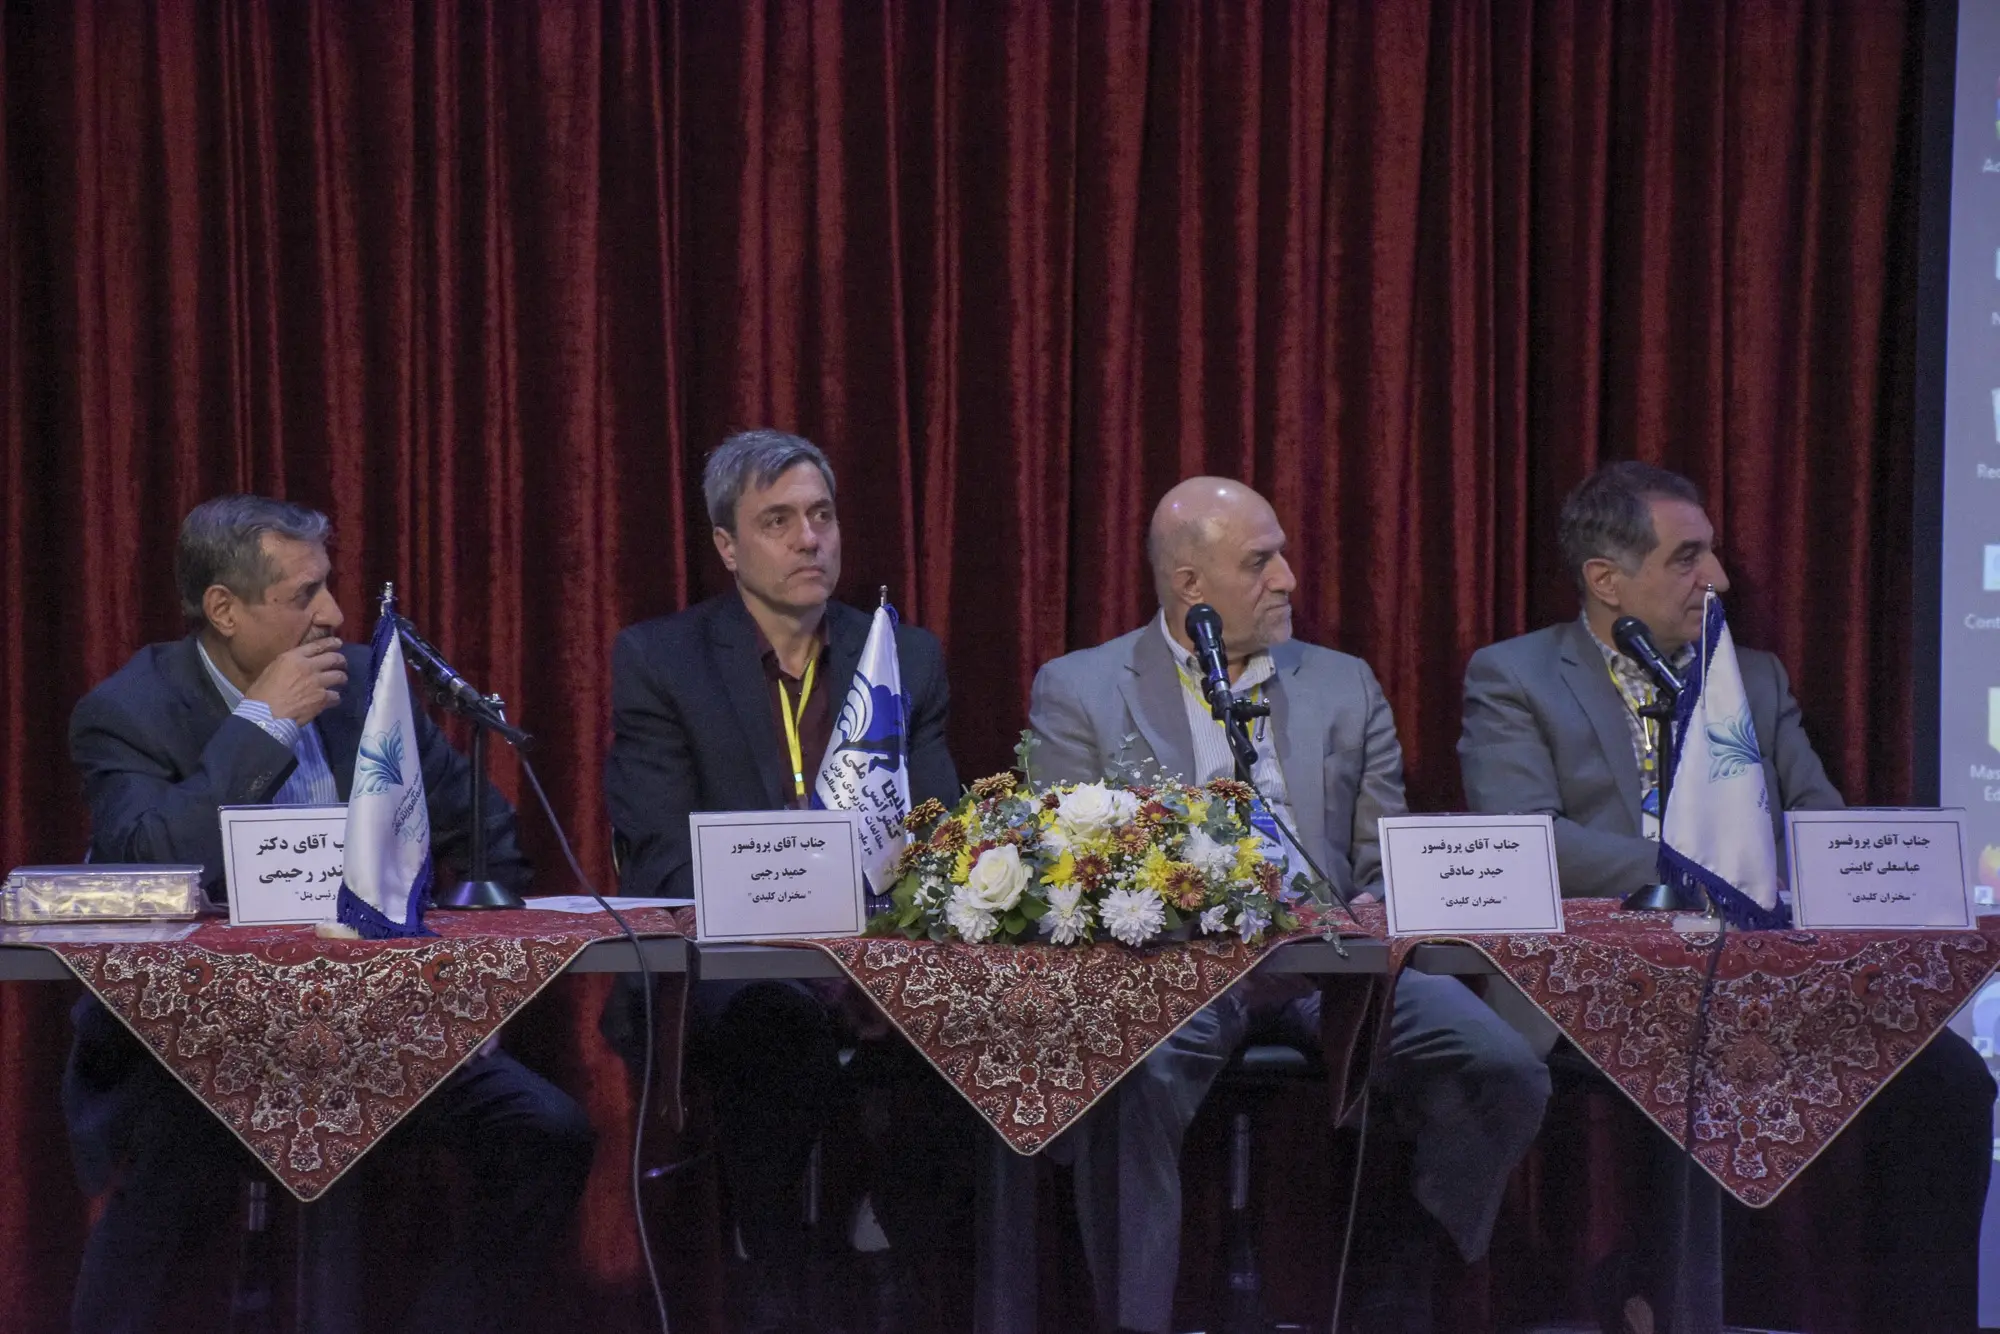 برگزاری اولین کنفرانس ملی مطالعات کاربردی نوین در علوم ورزشی و سلامت در شیراز